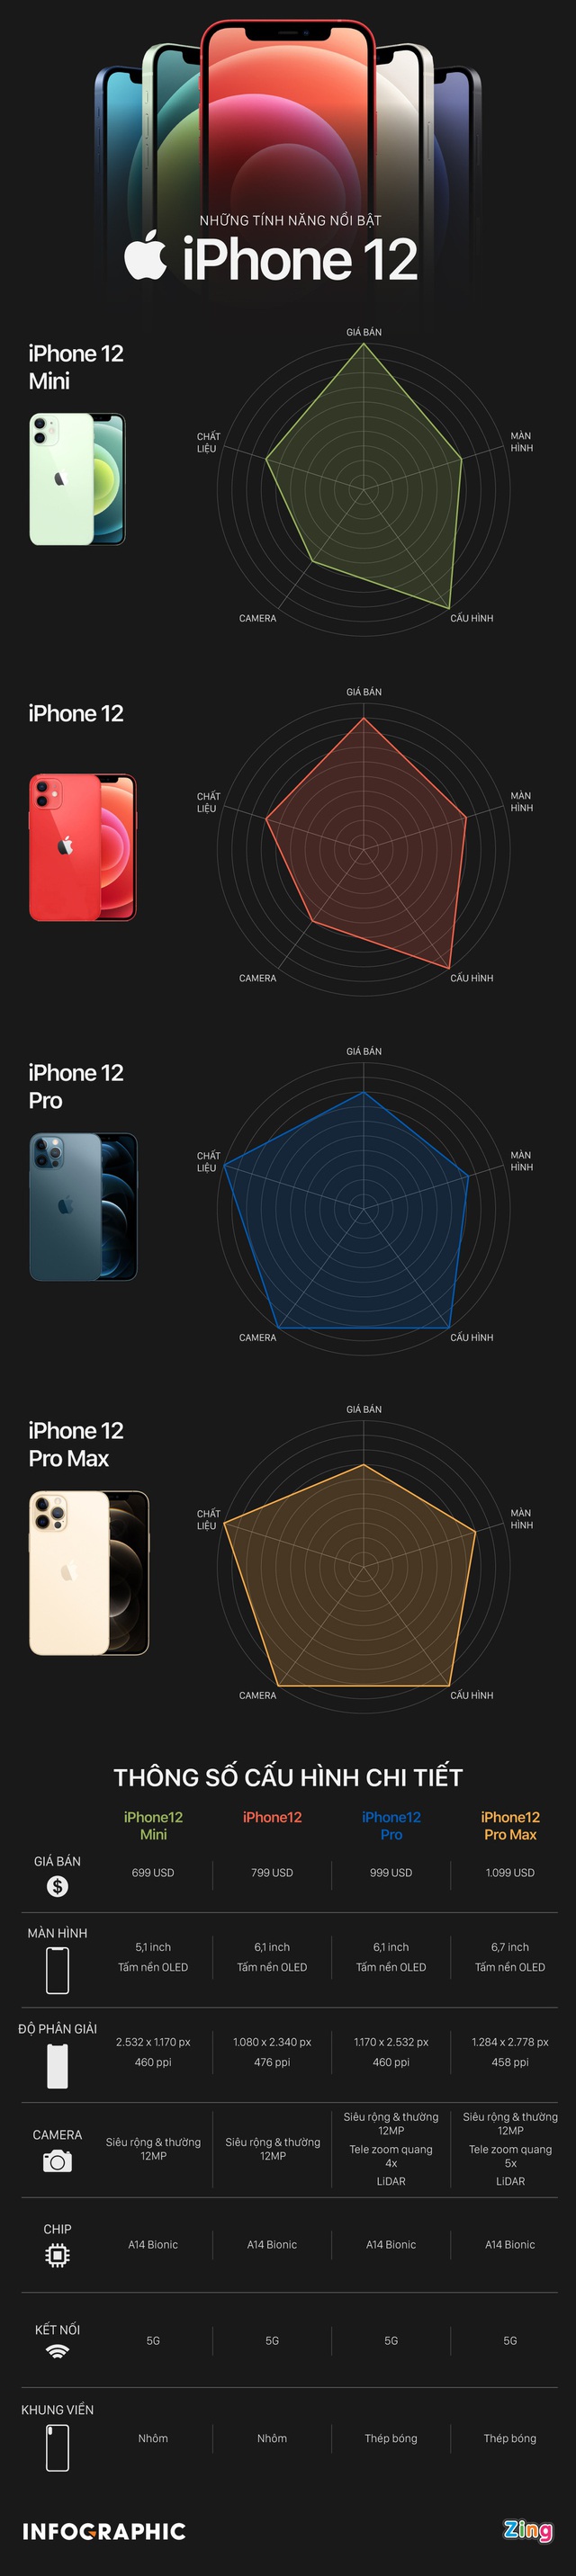 So sánh 4 mẫu iPhone 12 vừa được Apple ra mắt - Ảnh 1.